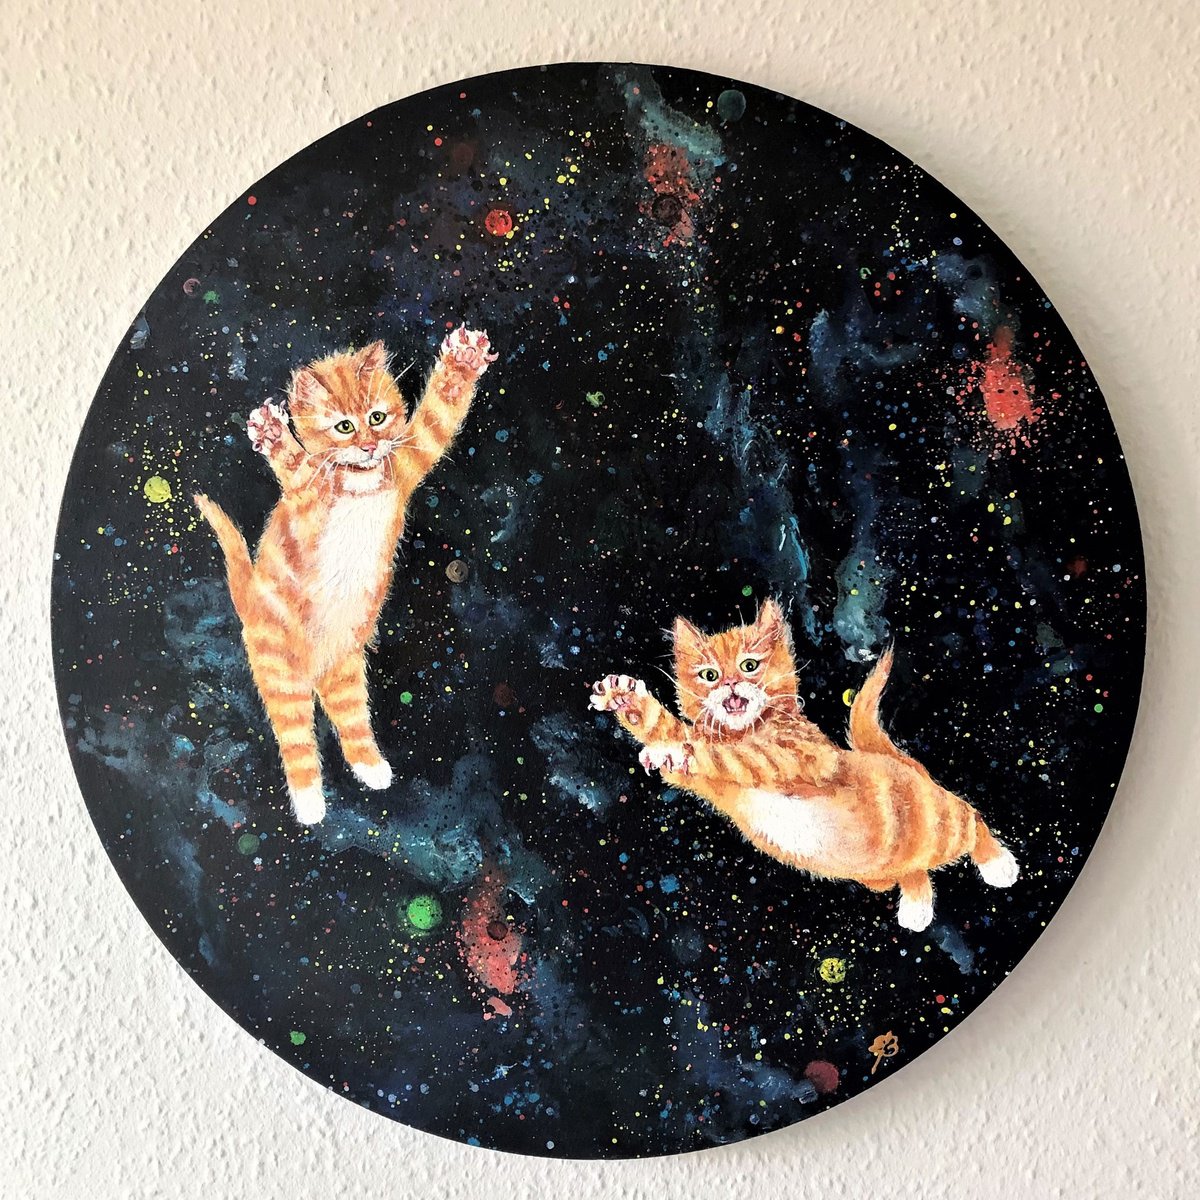 Ginger kittens in space by Lena Smirnova